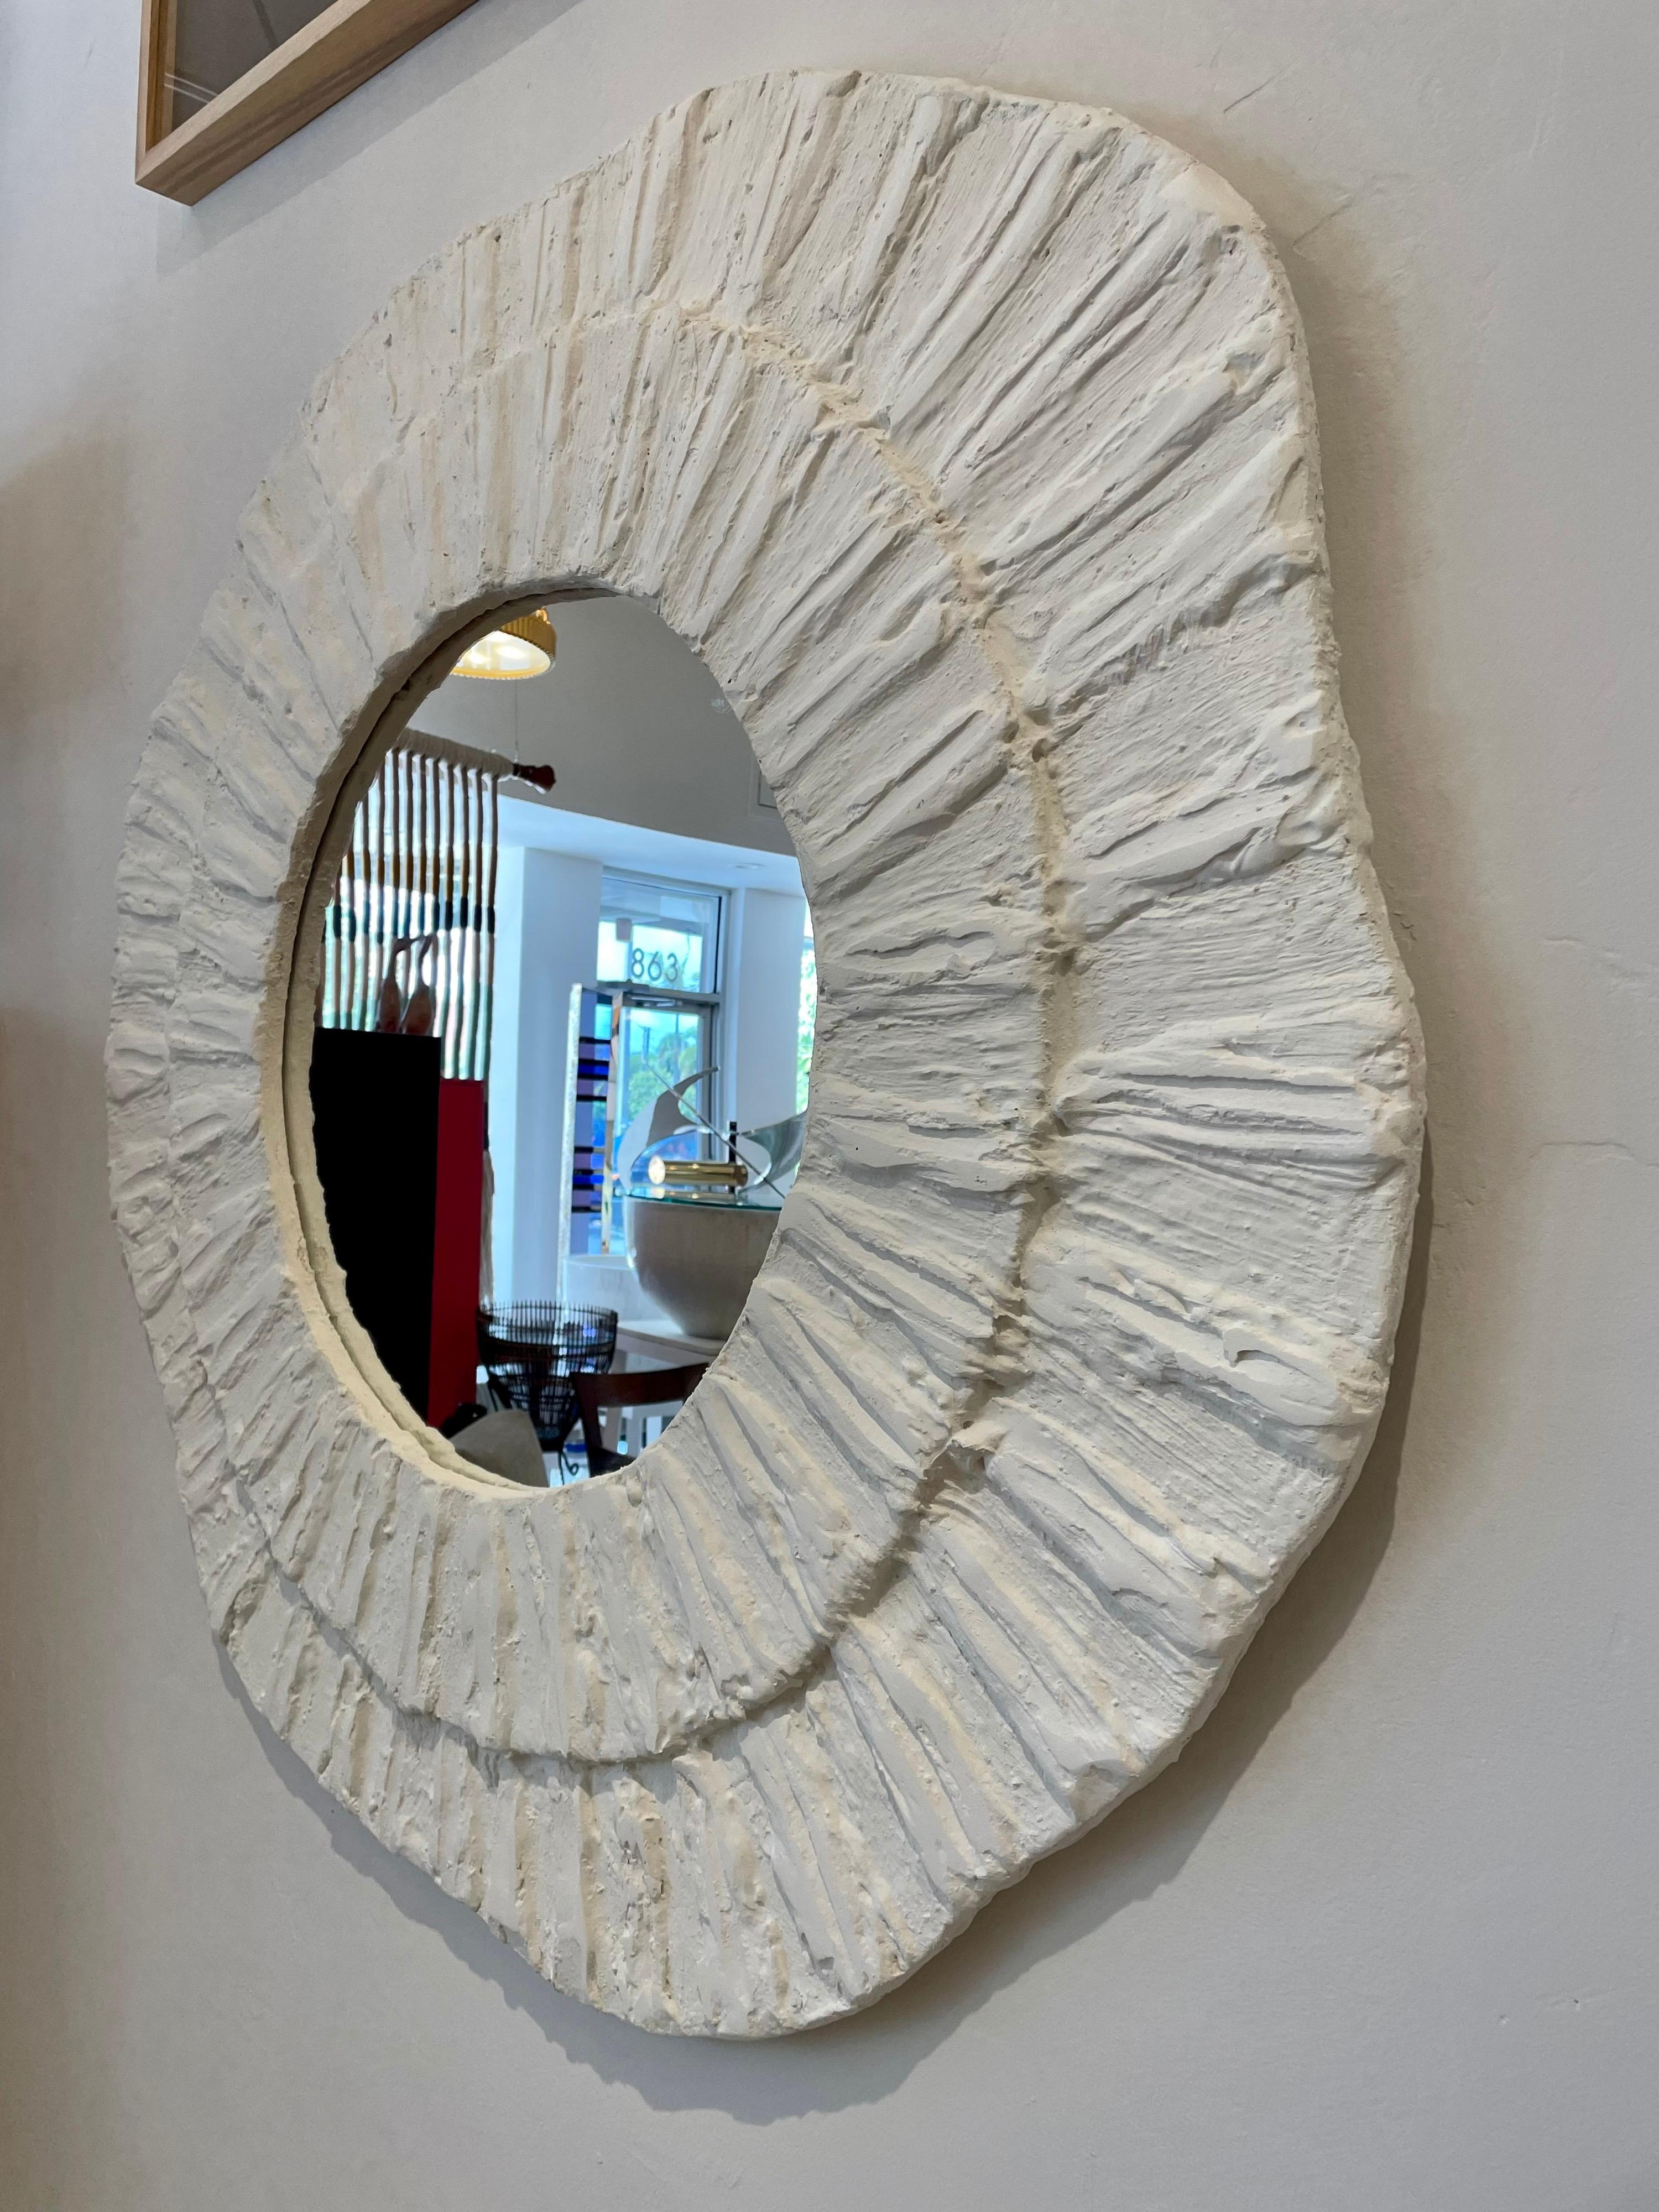 Ce merveilleux miroir en plâtre français texturé dans un cadre au design ondulé en deux sphères. Très organique et moderne - très chic ! Mesure : 4 pieds de diamètre.

Note : nous en avons deux disponibles mais vendus séparément.